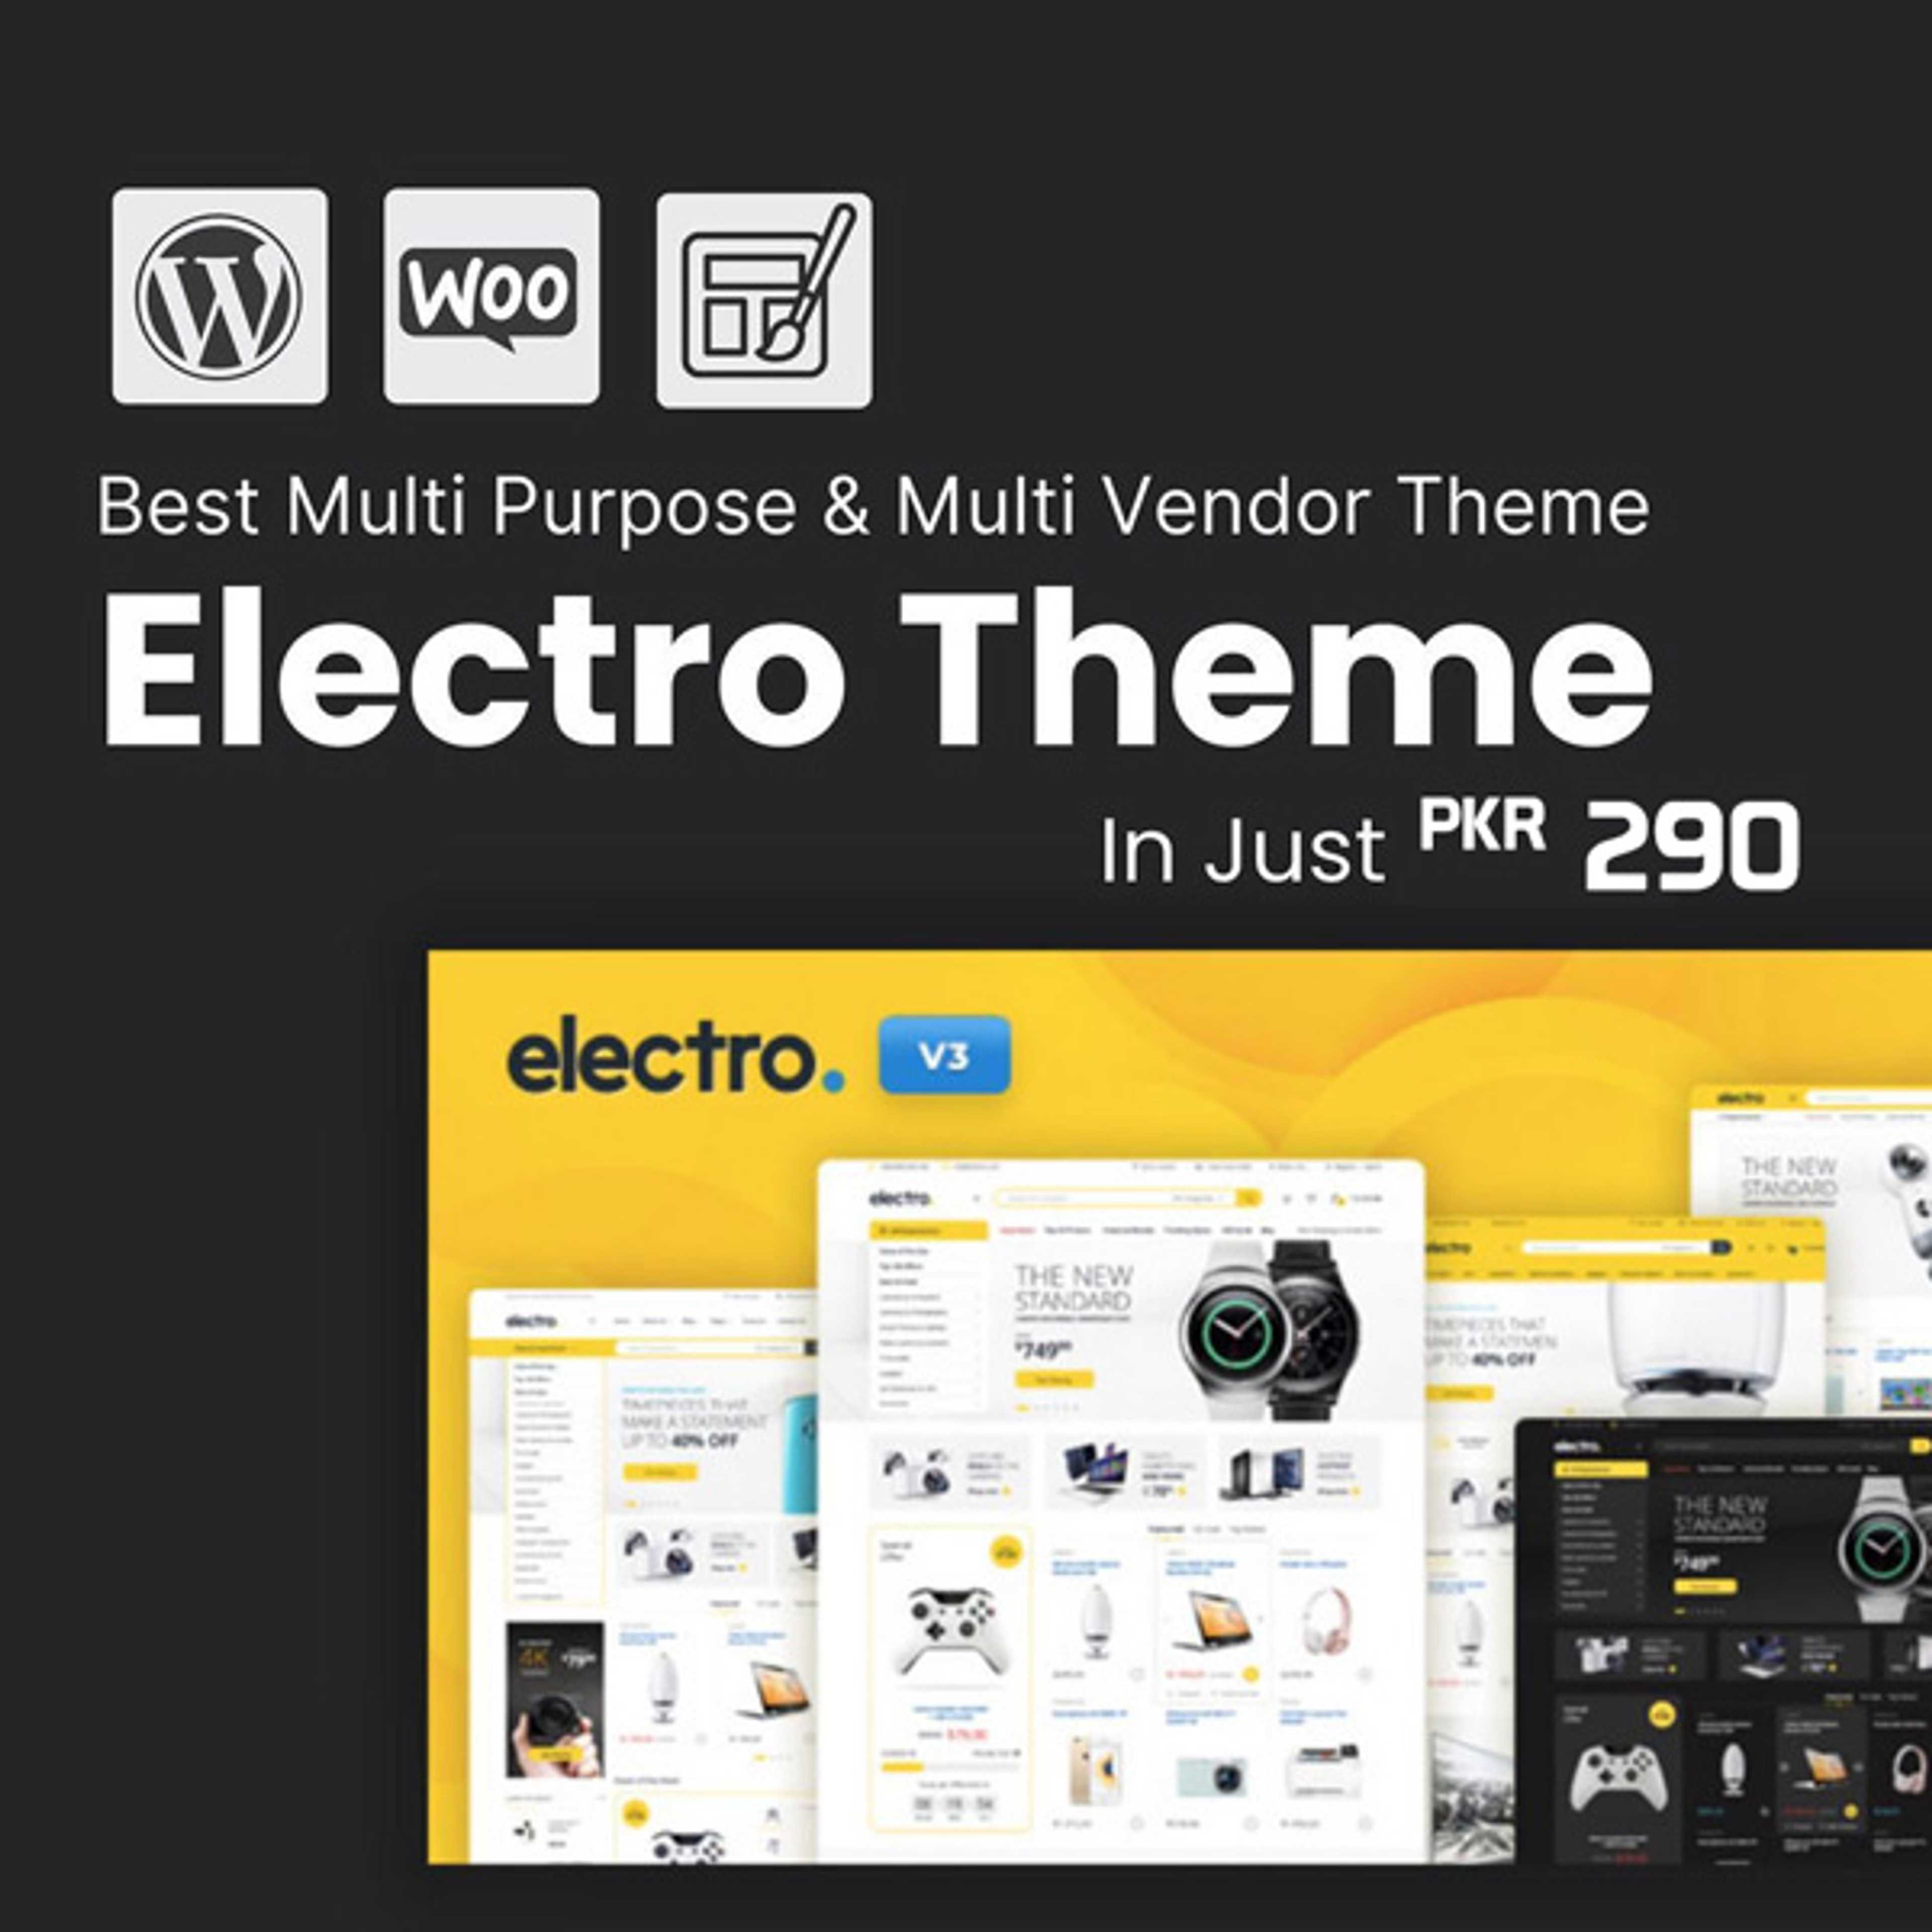 Electro Theme Best Multi Purpose and multi vendor theme